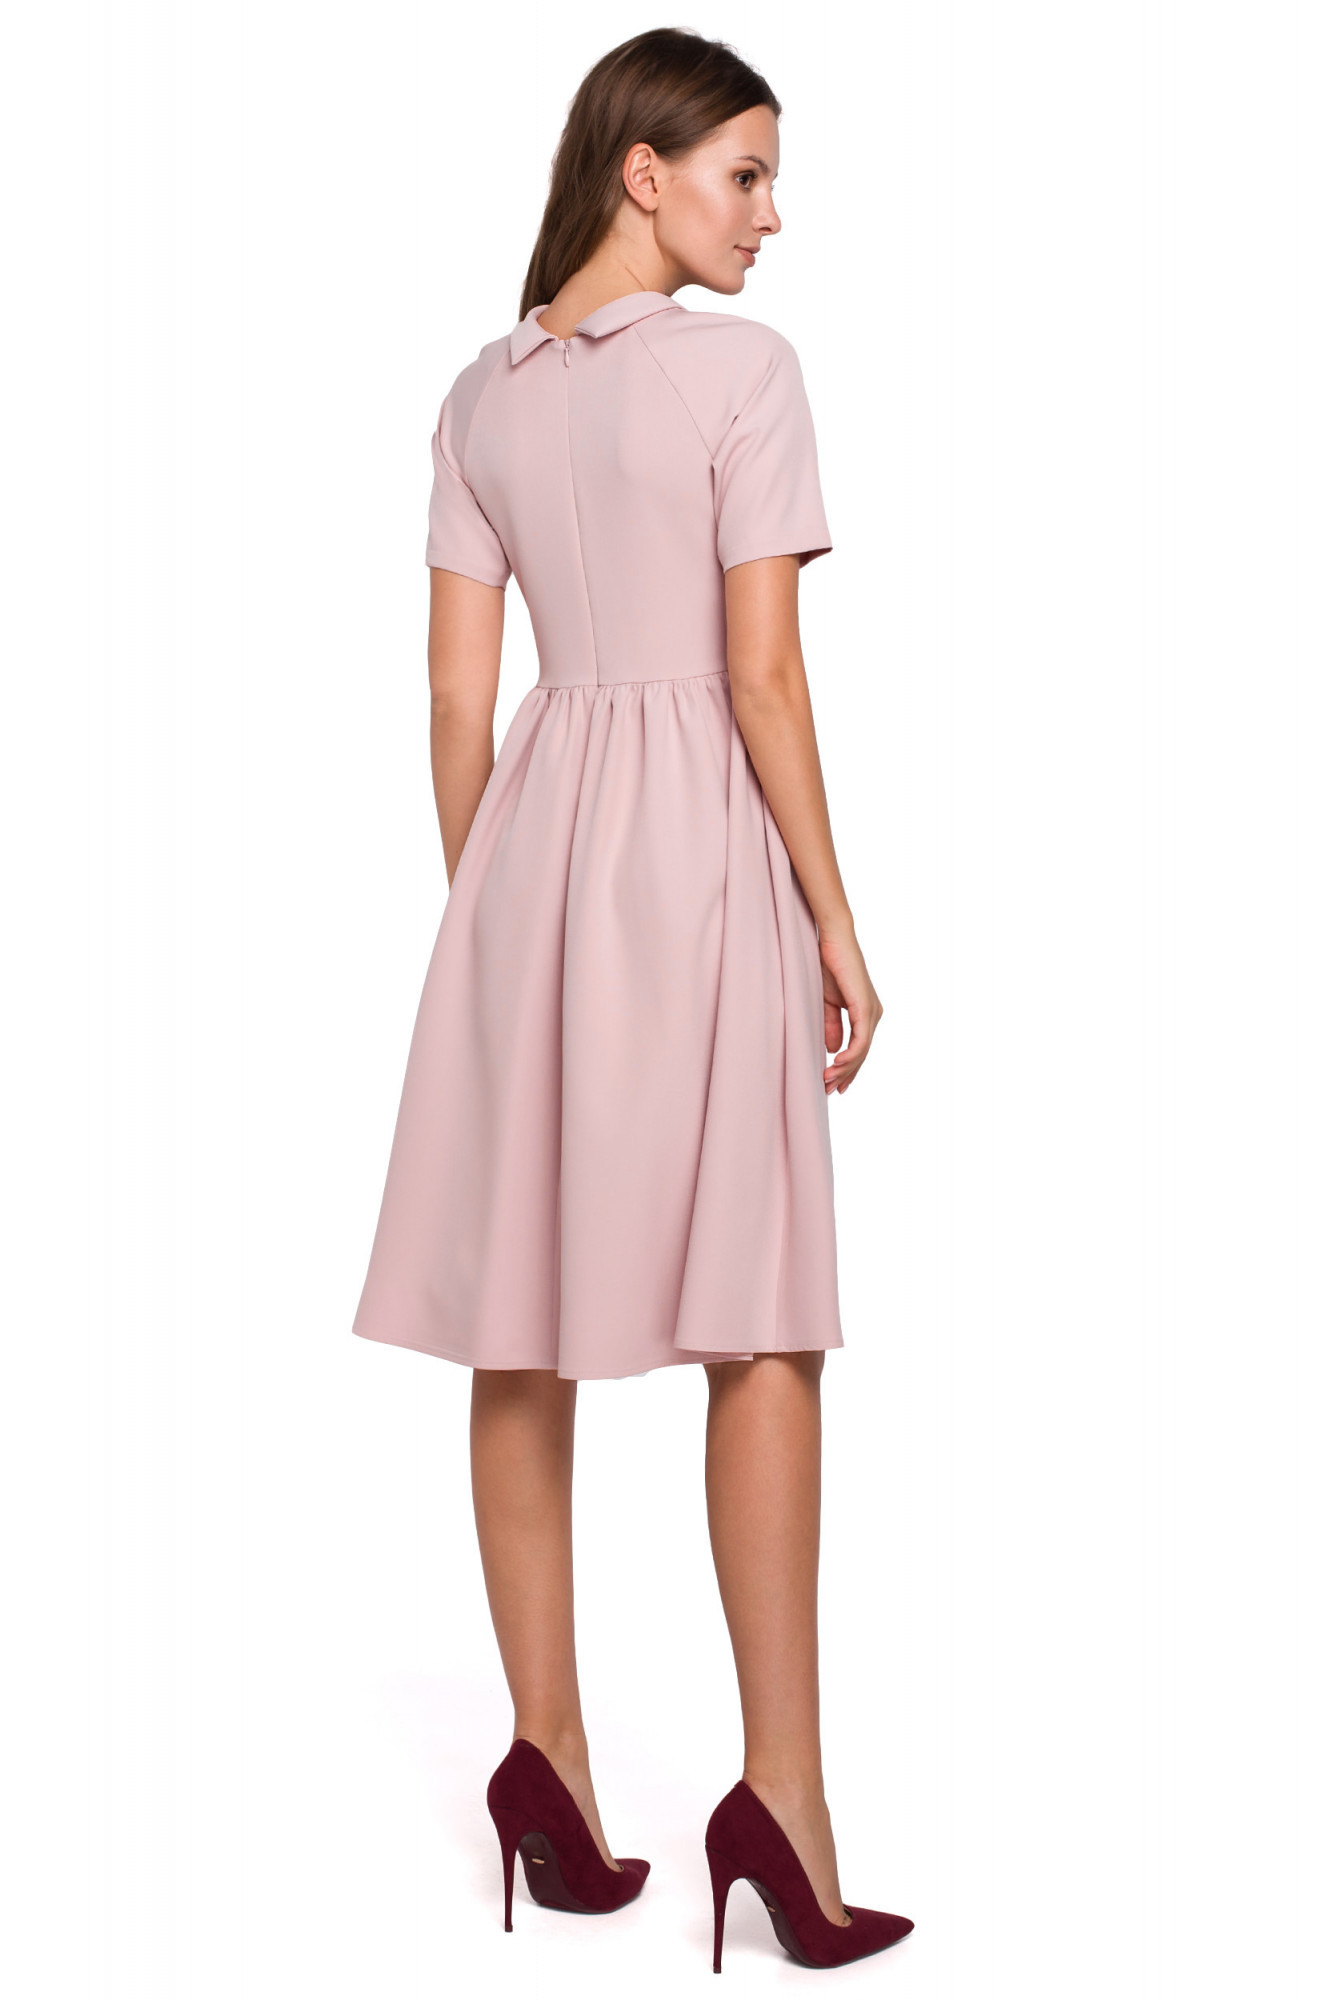 Dámské šaty K028 pudr růžová - Makover pudrovo-růžová M